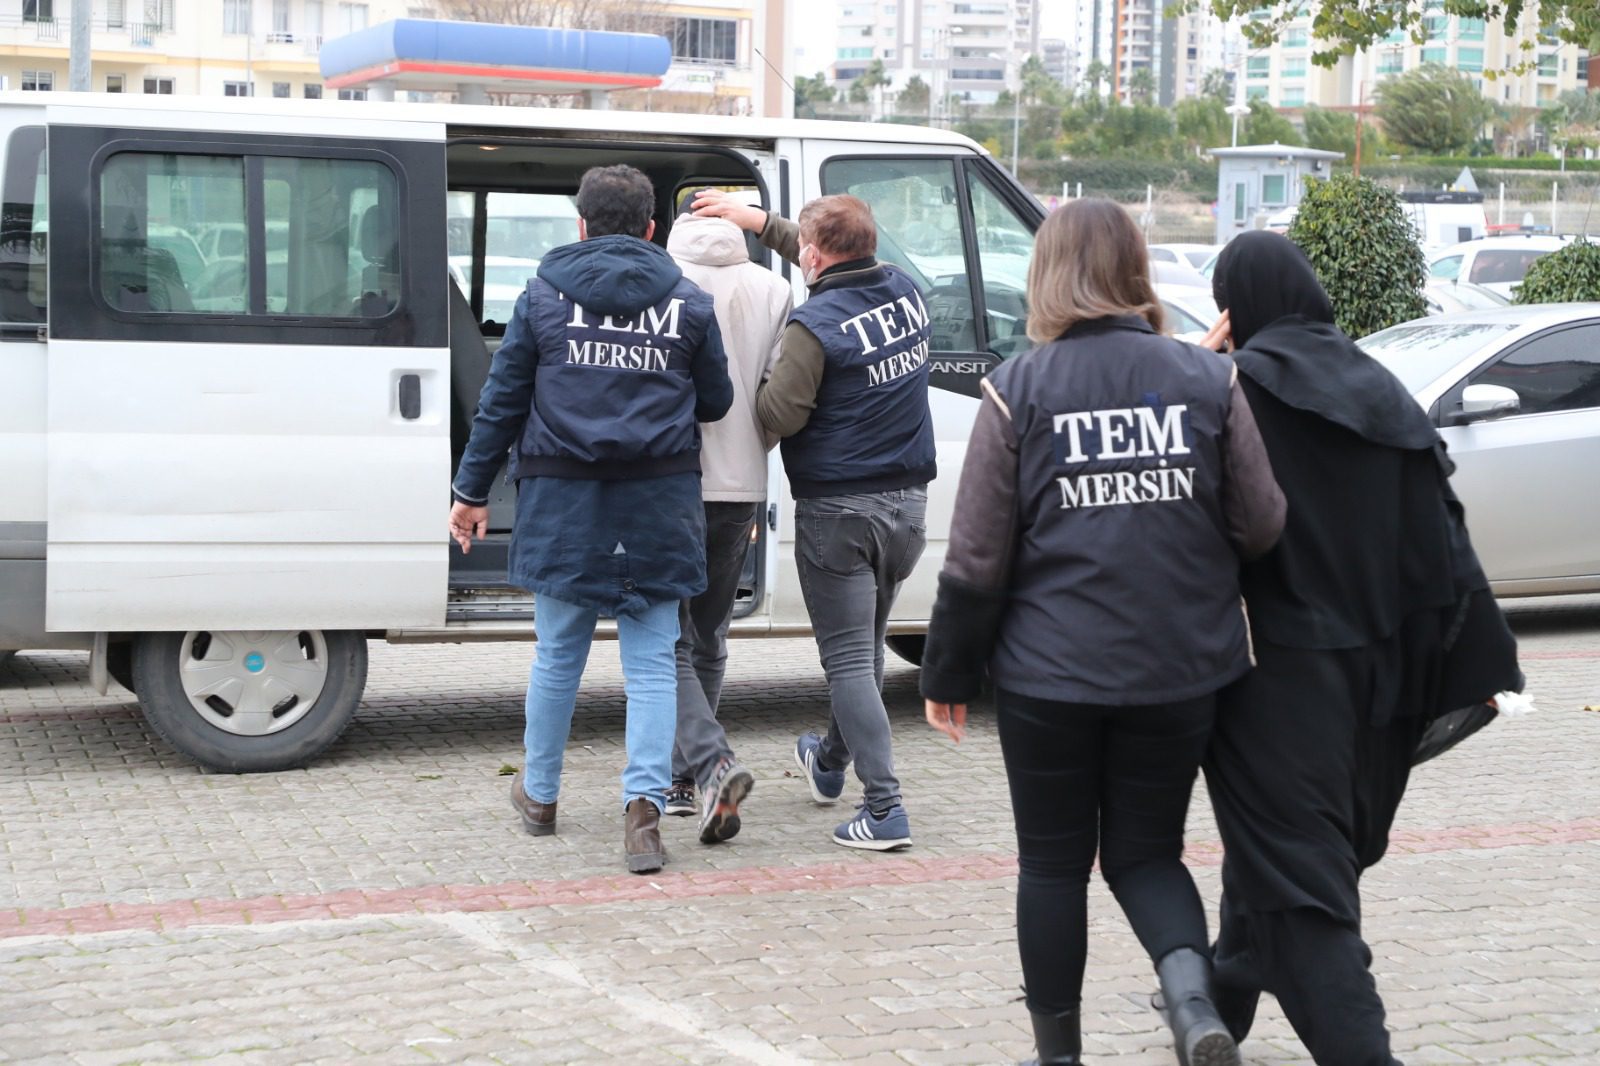 Mersin’de DEAŞ’a hücre evi operasyonu: 2 kişi tutuklandı